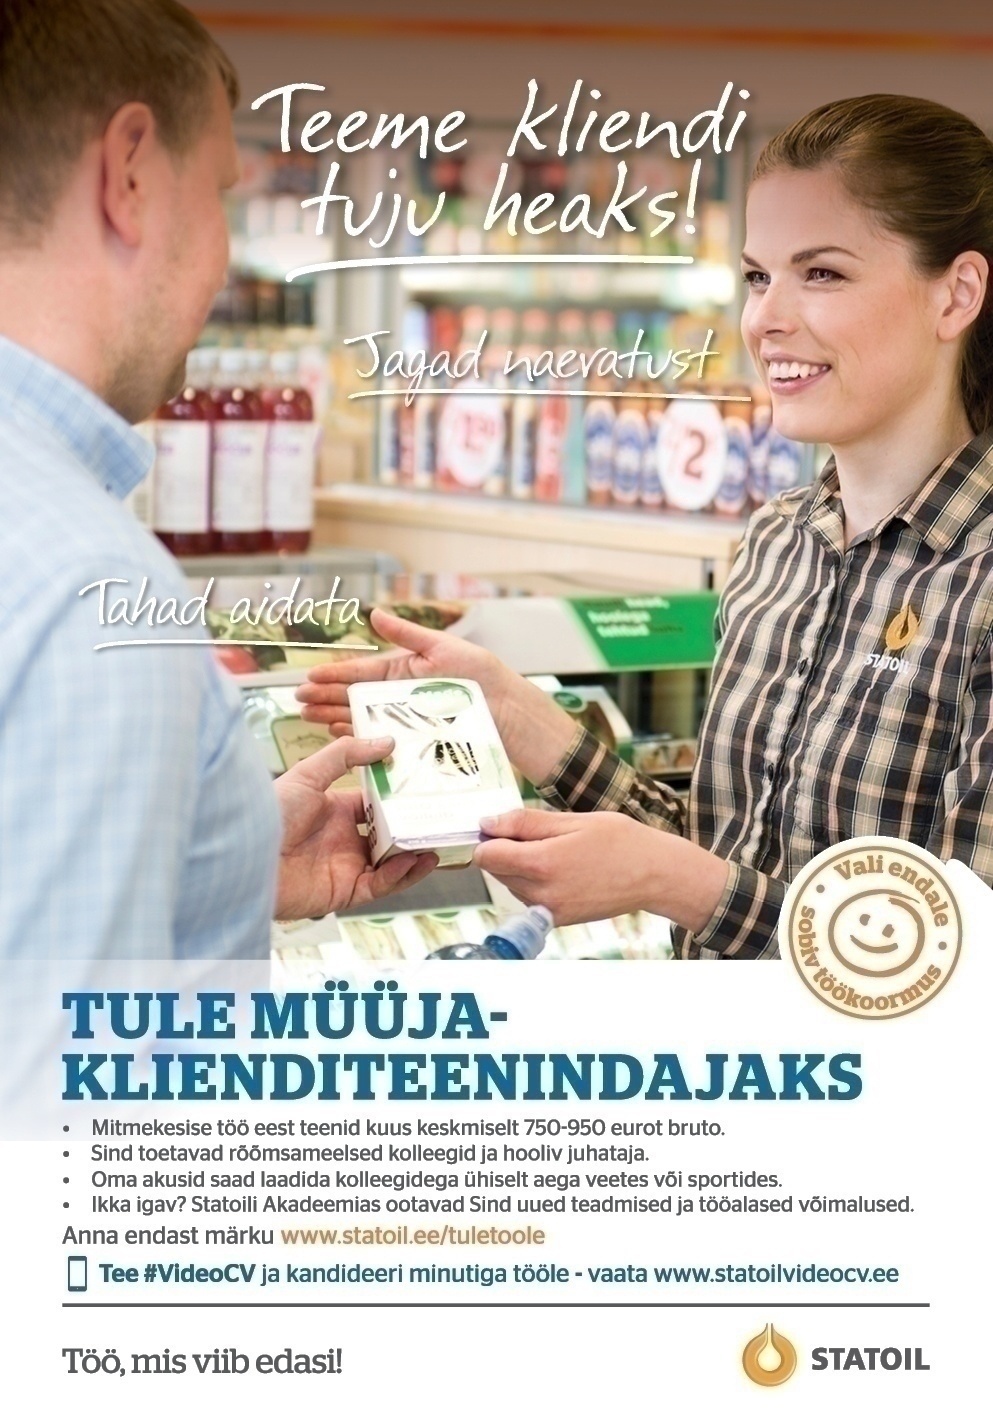 Circle K Eesti AS Müüja-klienditeenindaja Tallinna Linnahalli teenindusjaama